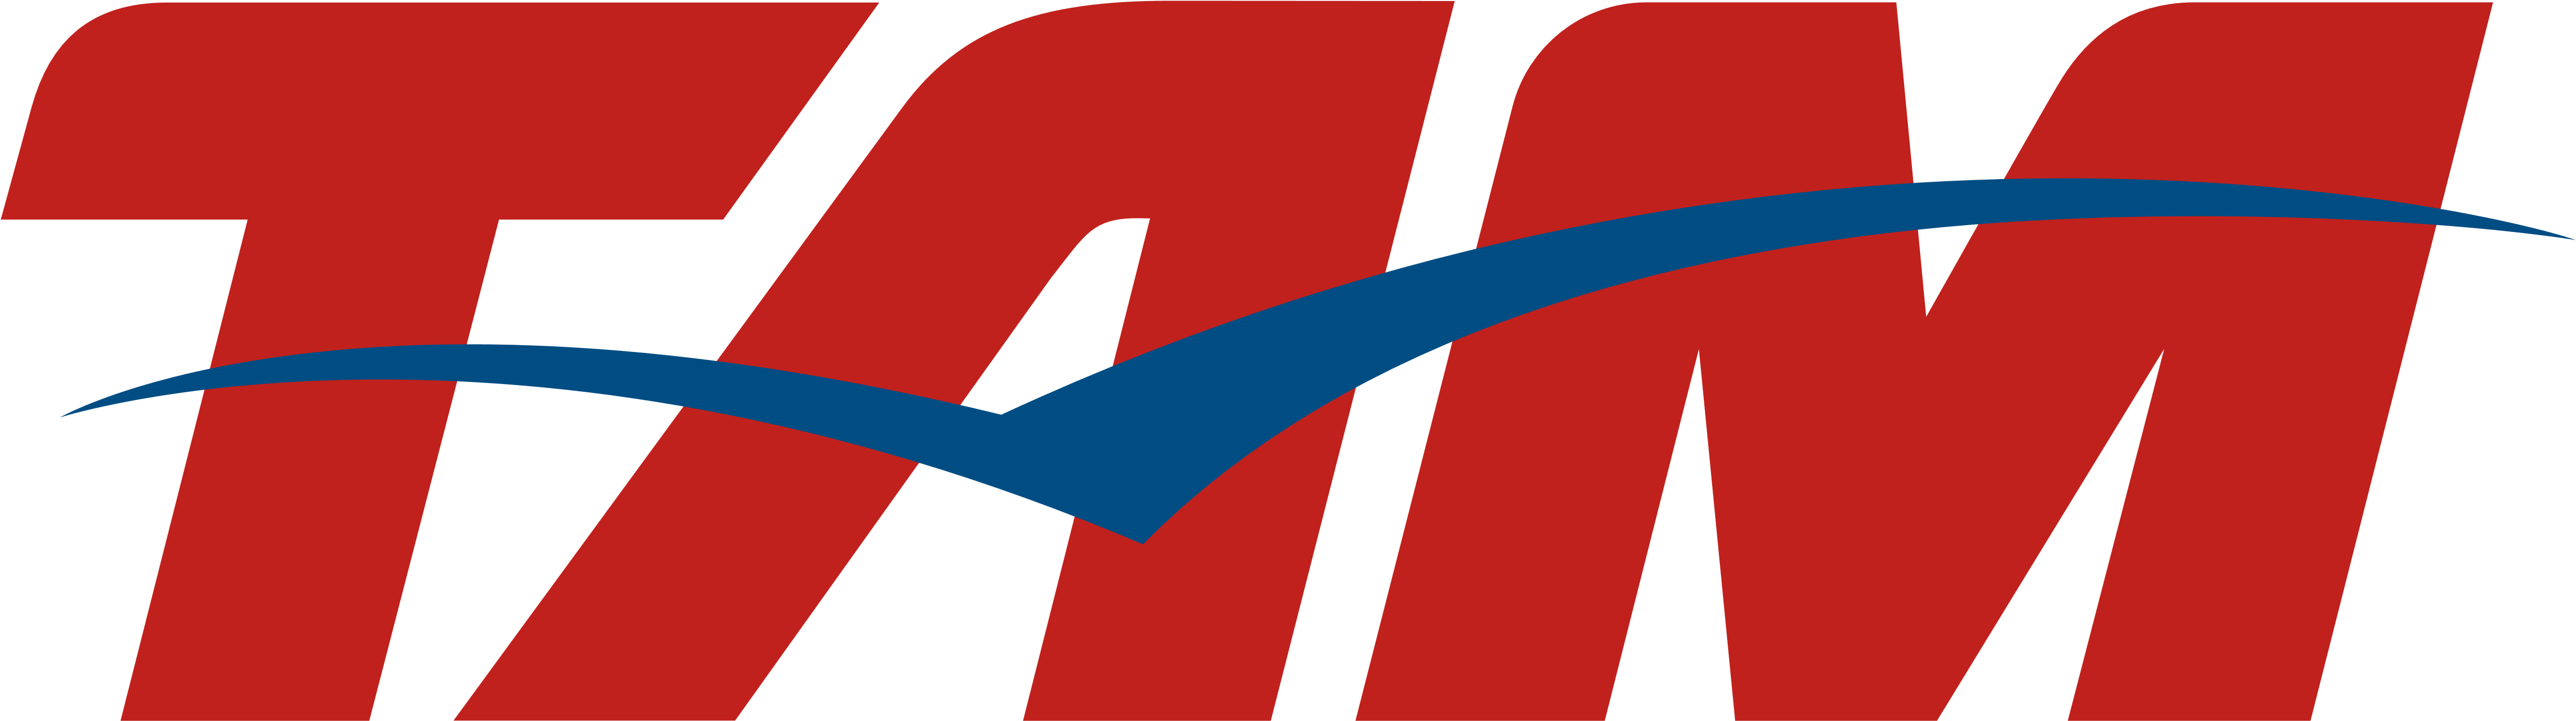 lan airlines logo